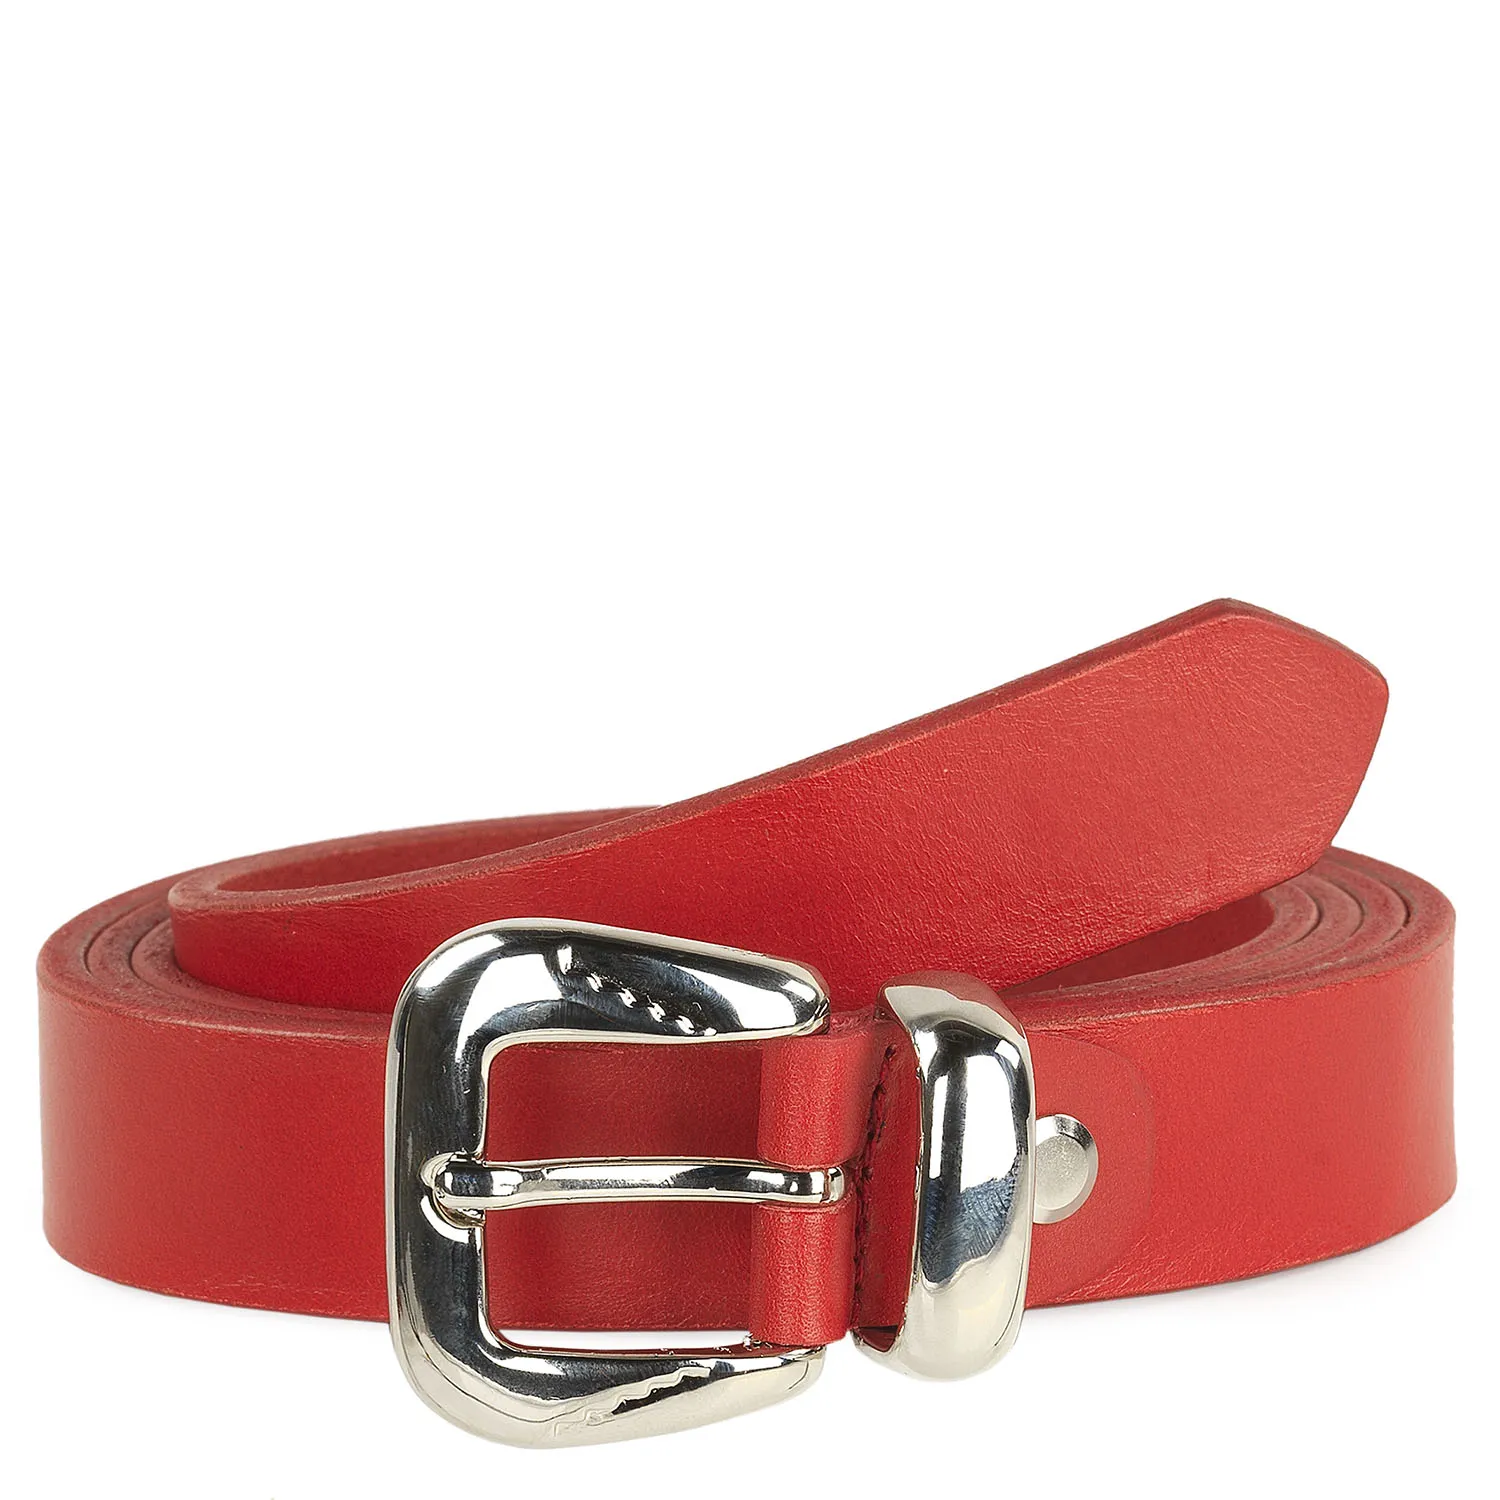 Cinturon Mujer De Cuero Genuino Marca JASLEN - Cinturones Mujer De - Cinturón Mujer Ideal Para El Uso Diario 49909 | Miravia